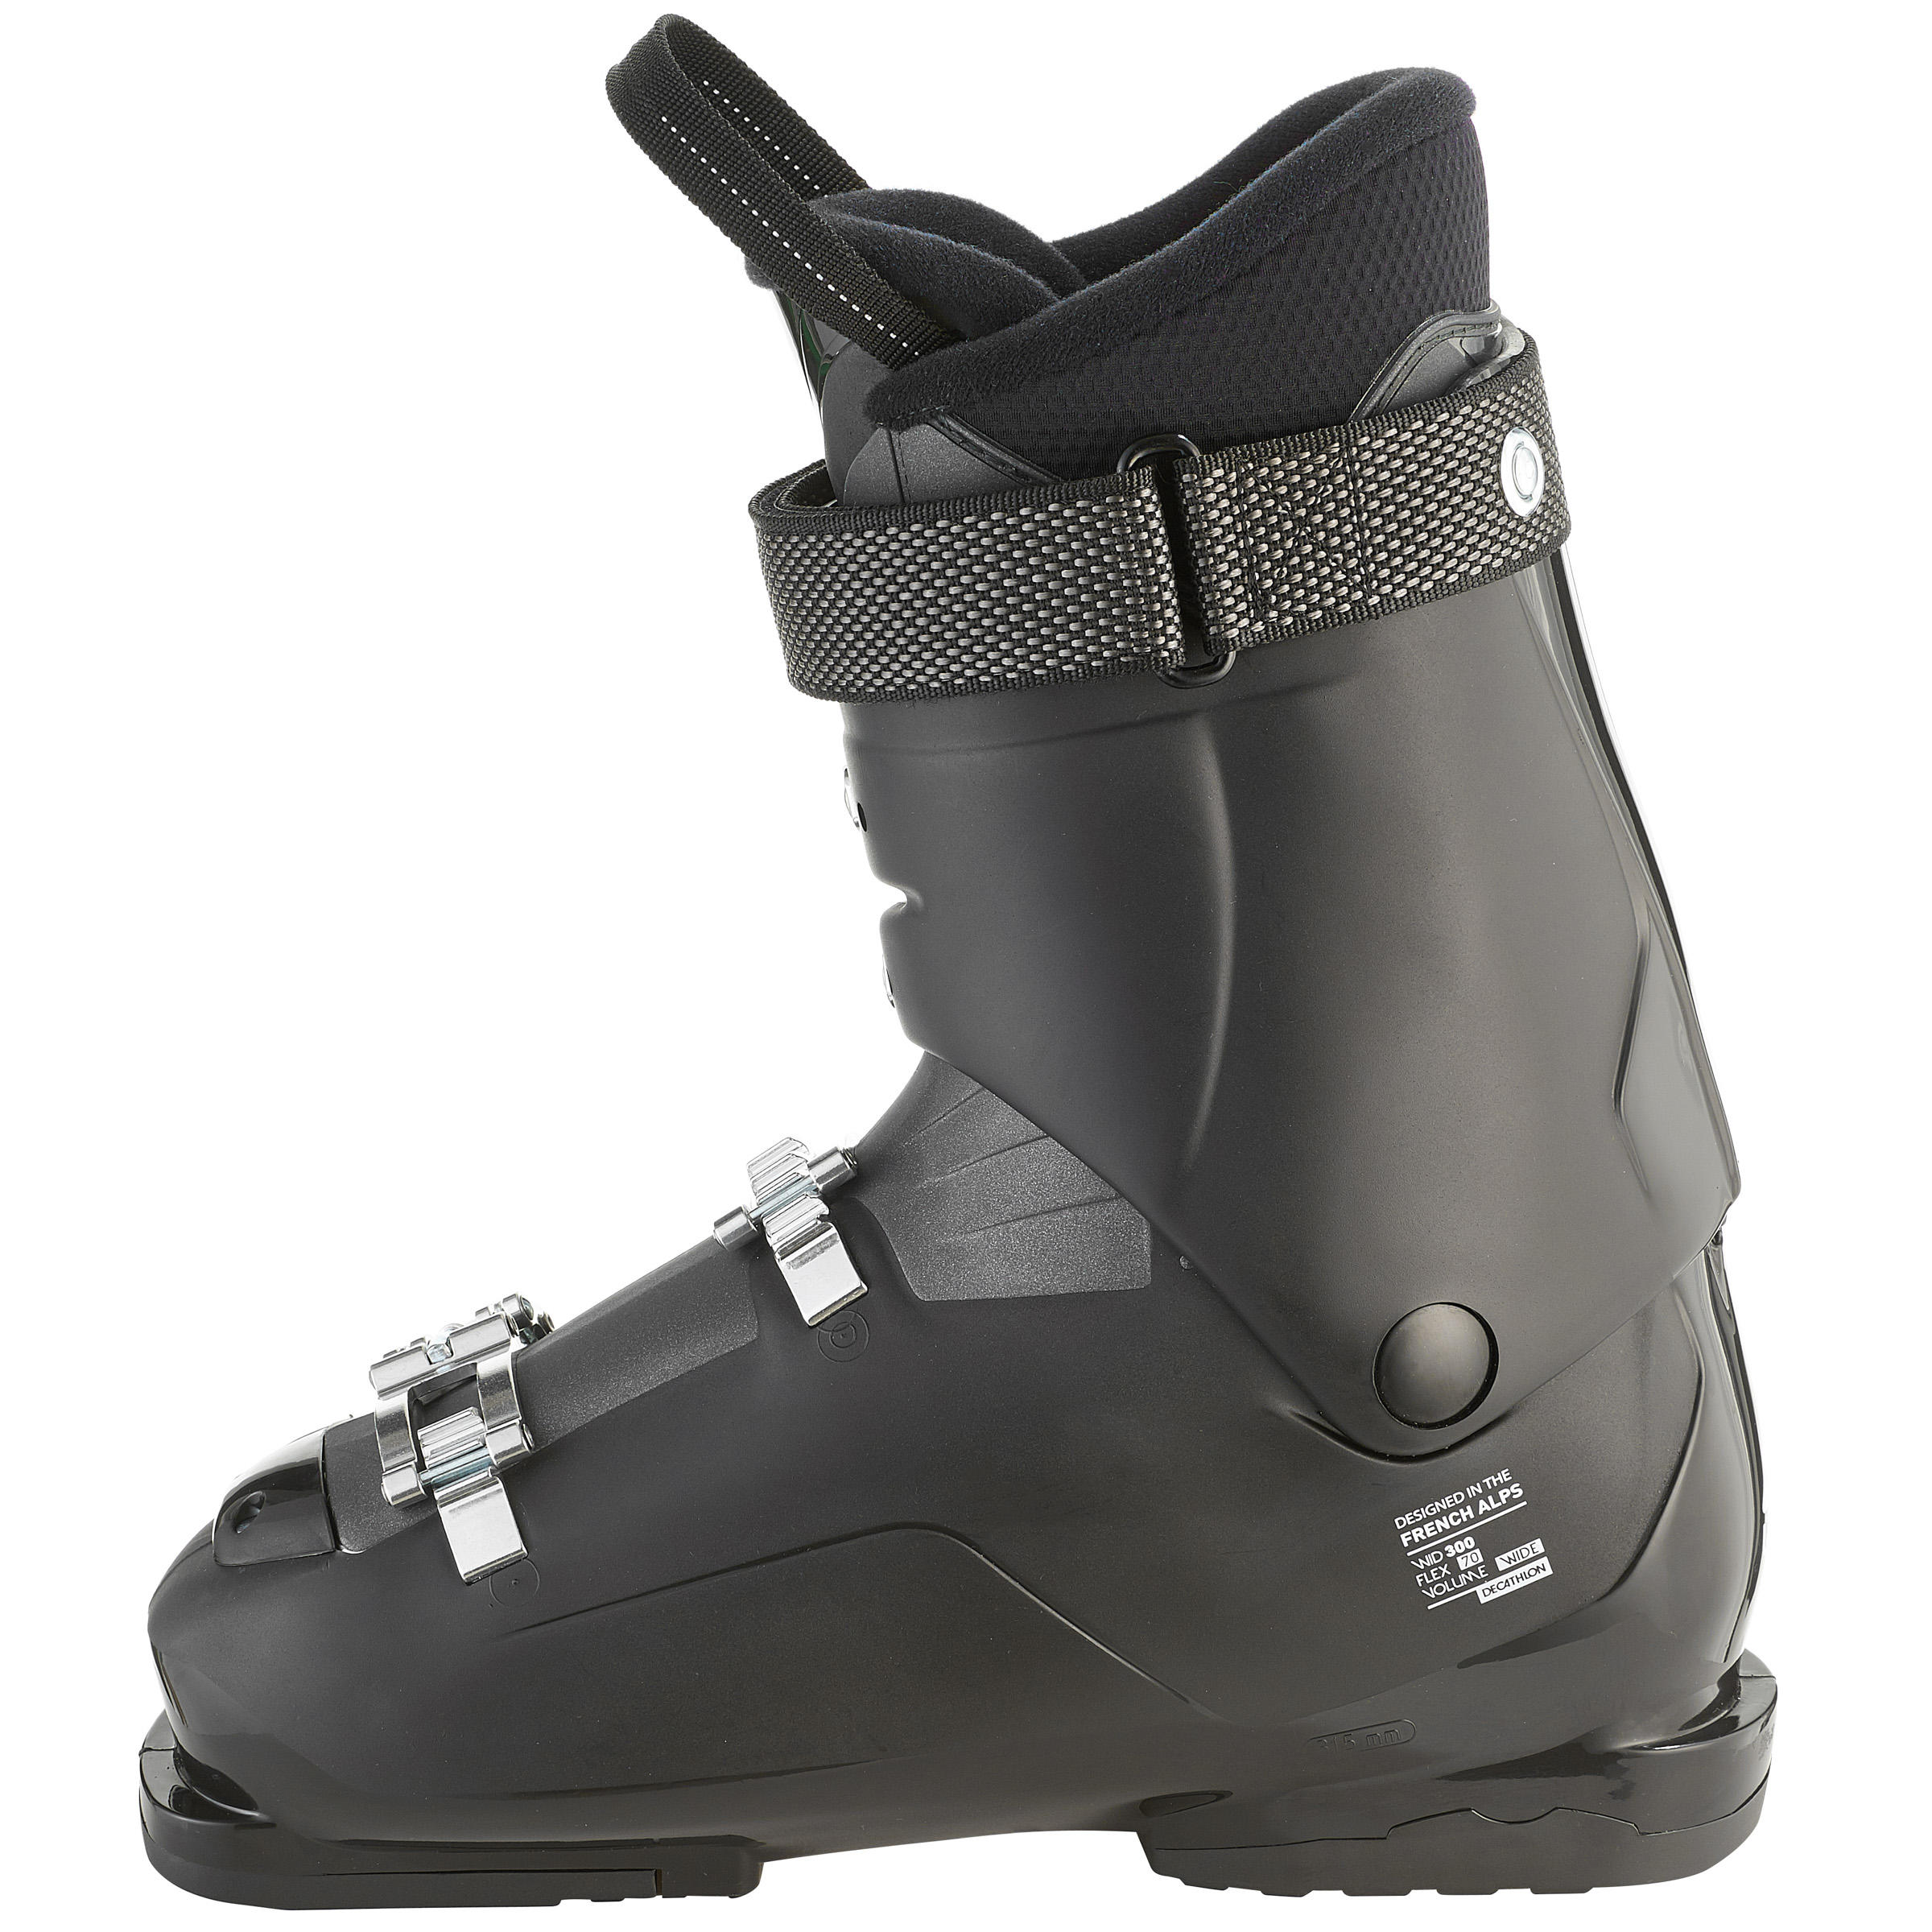 Men's Downhill Ski Boots Wid Black 8/10